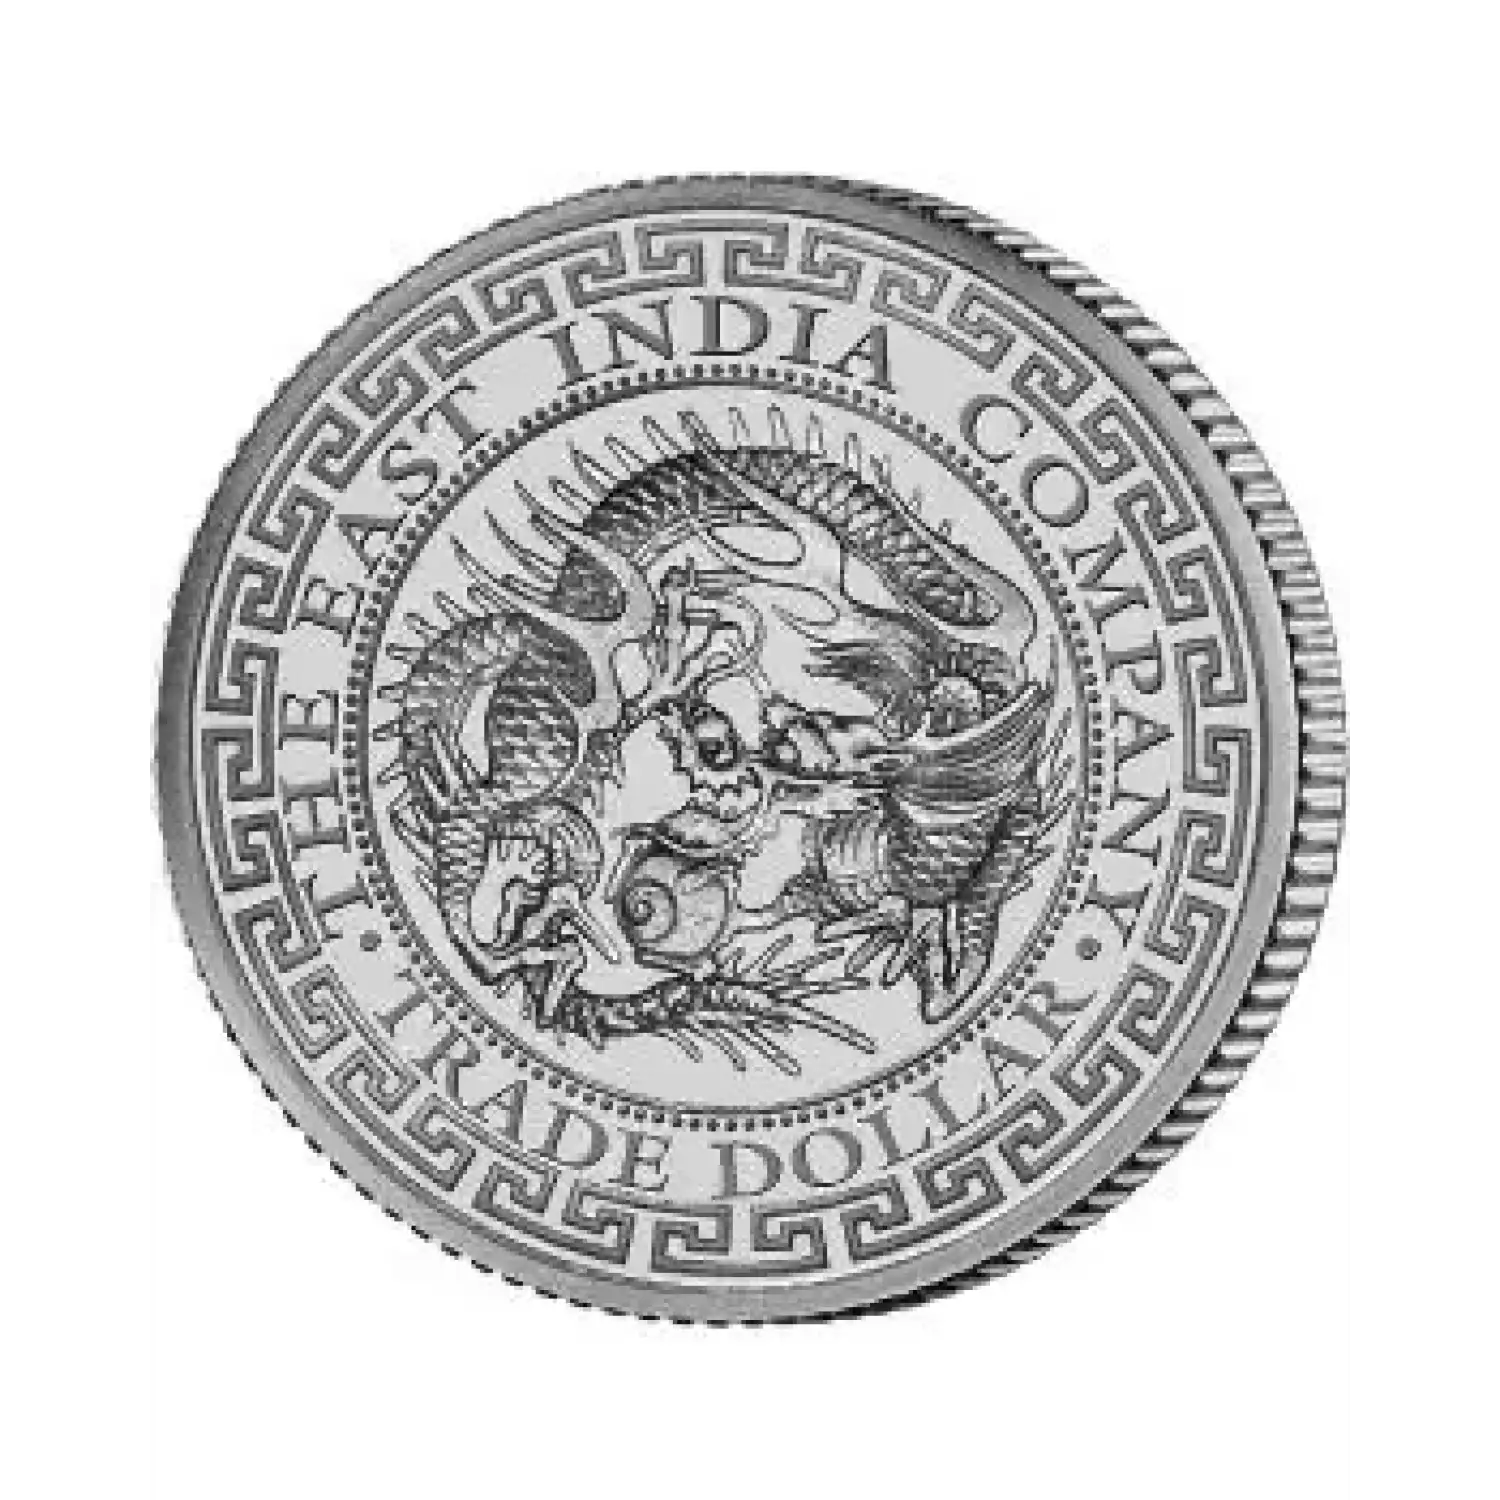 2020 Japanese Trade Dollar 1oz Silver Coin (1)